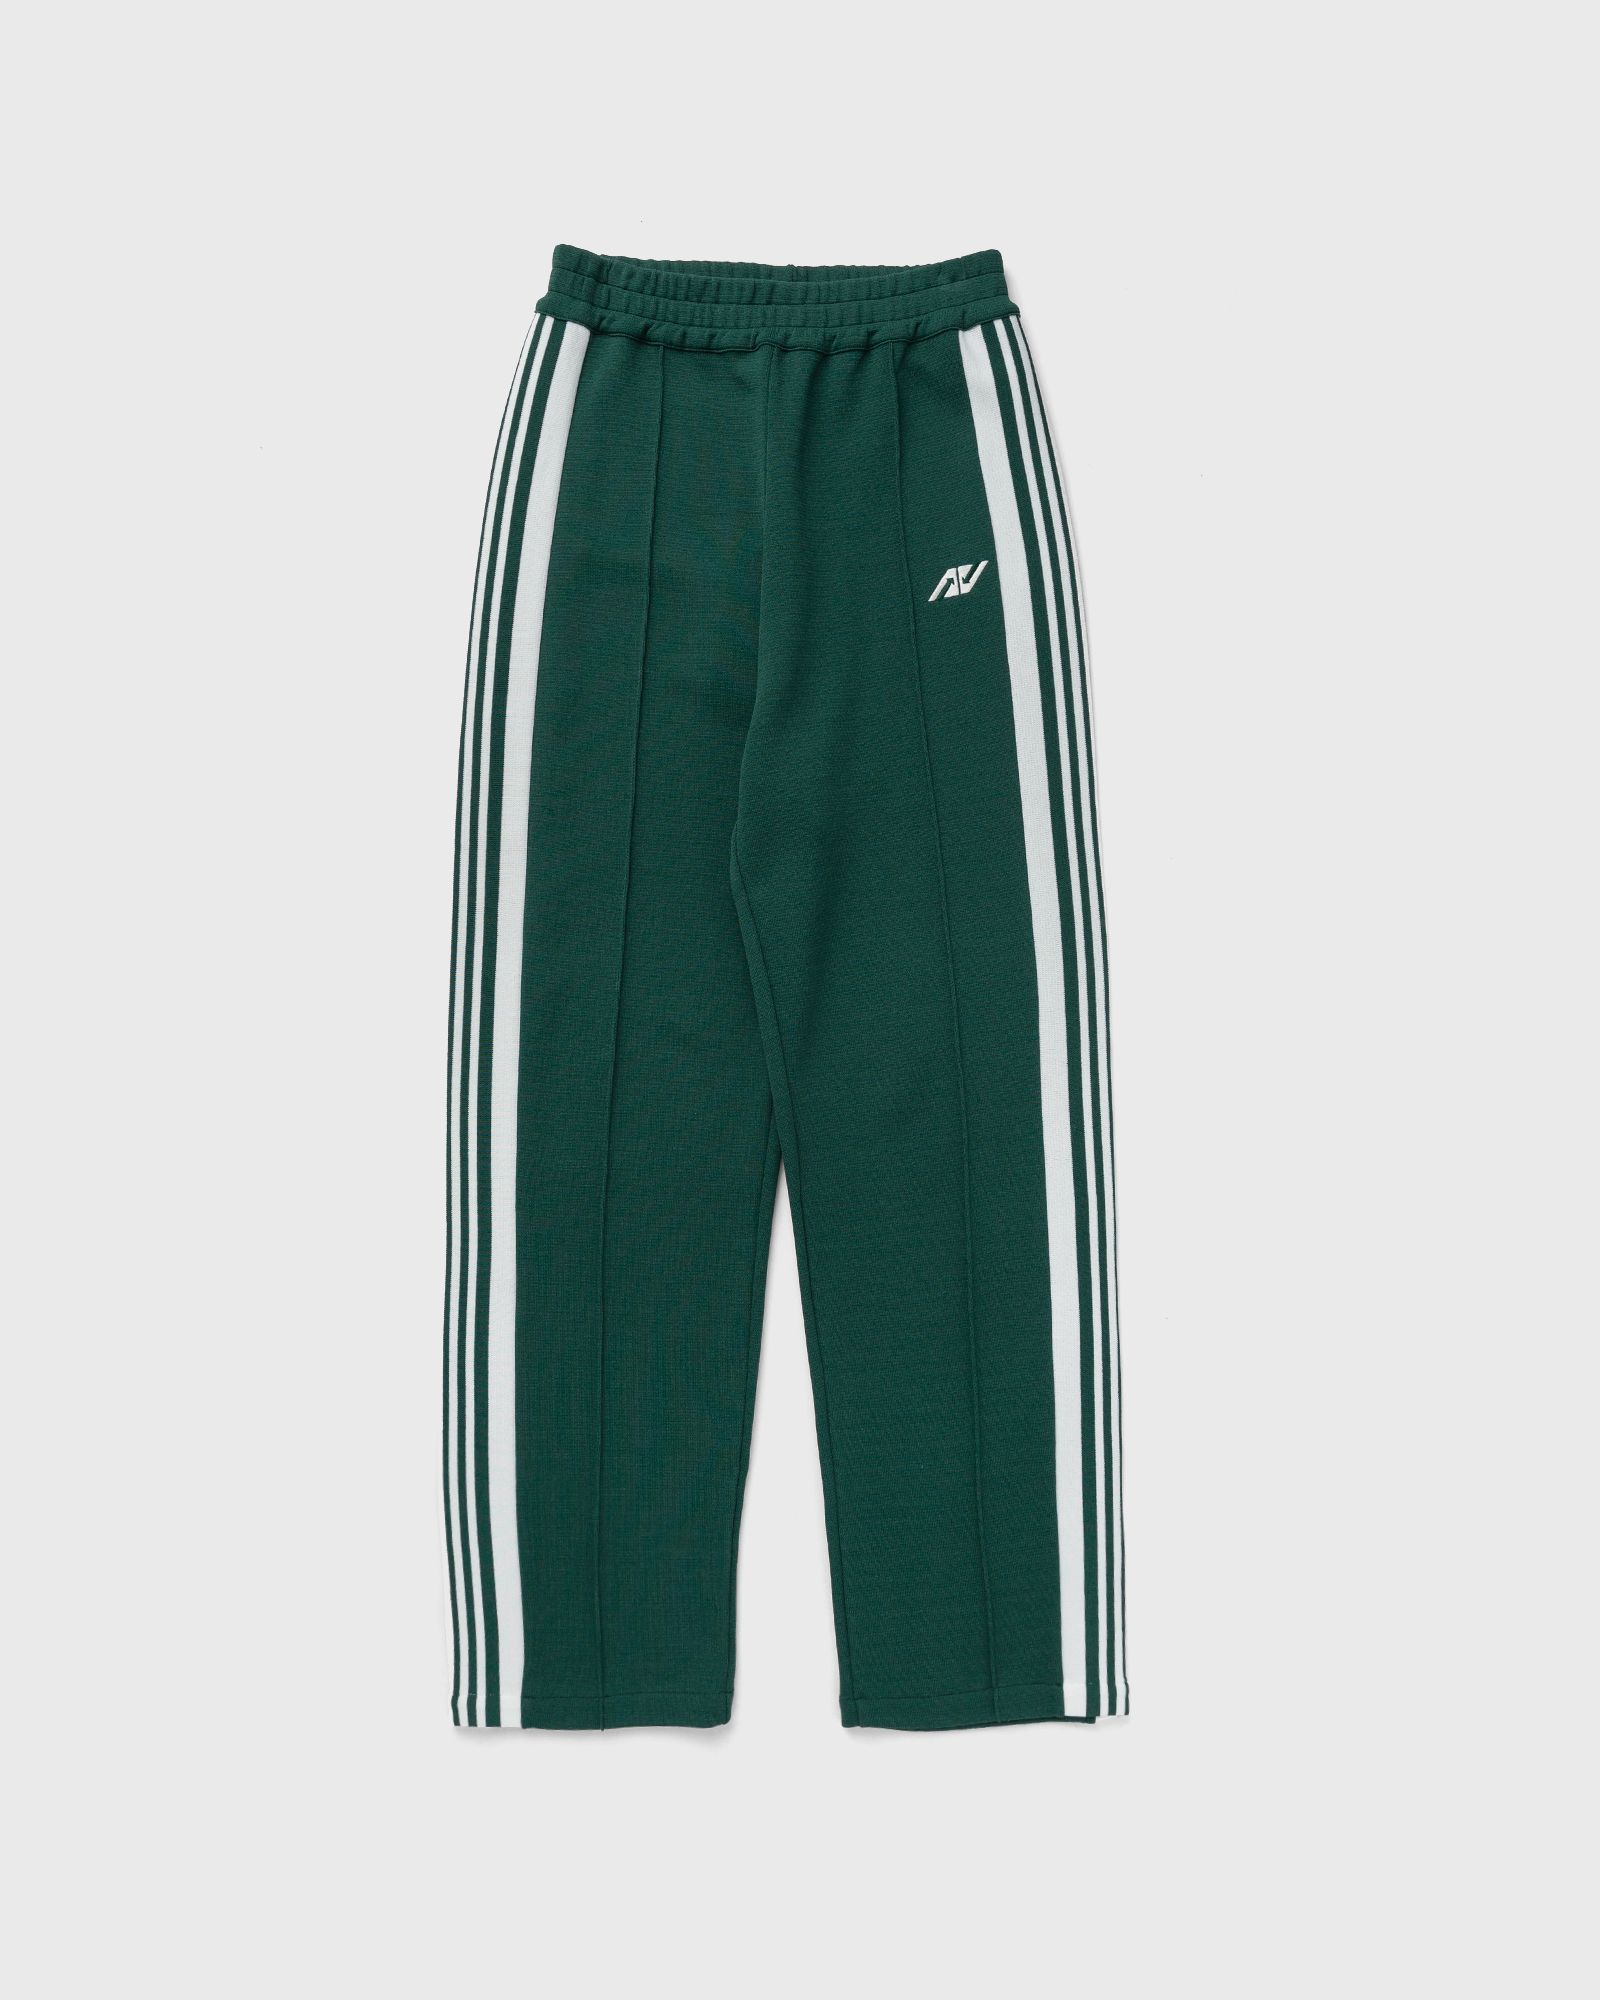 Autry Action Shoes - pants sporty men sweatpants green in größe:xl